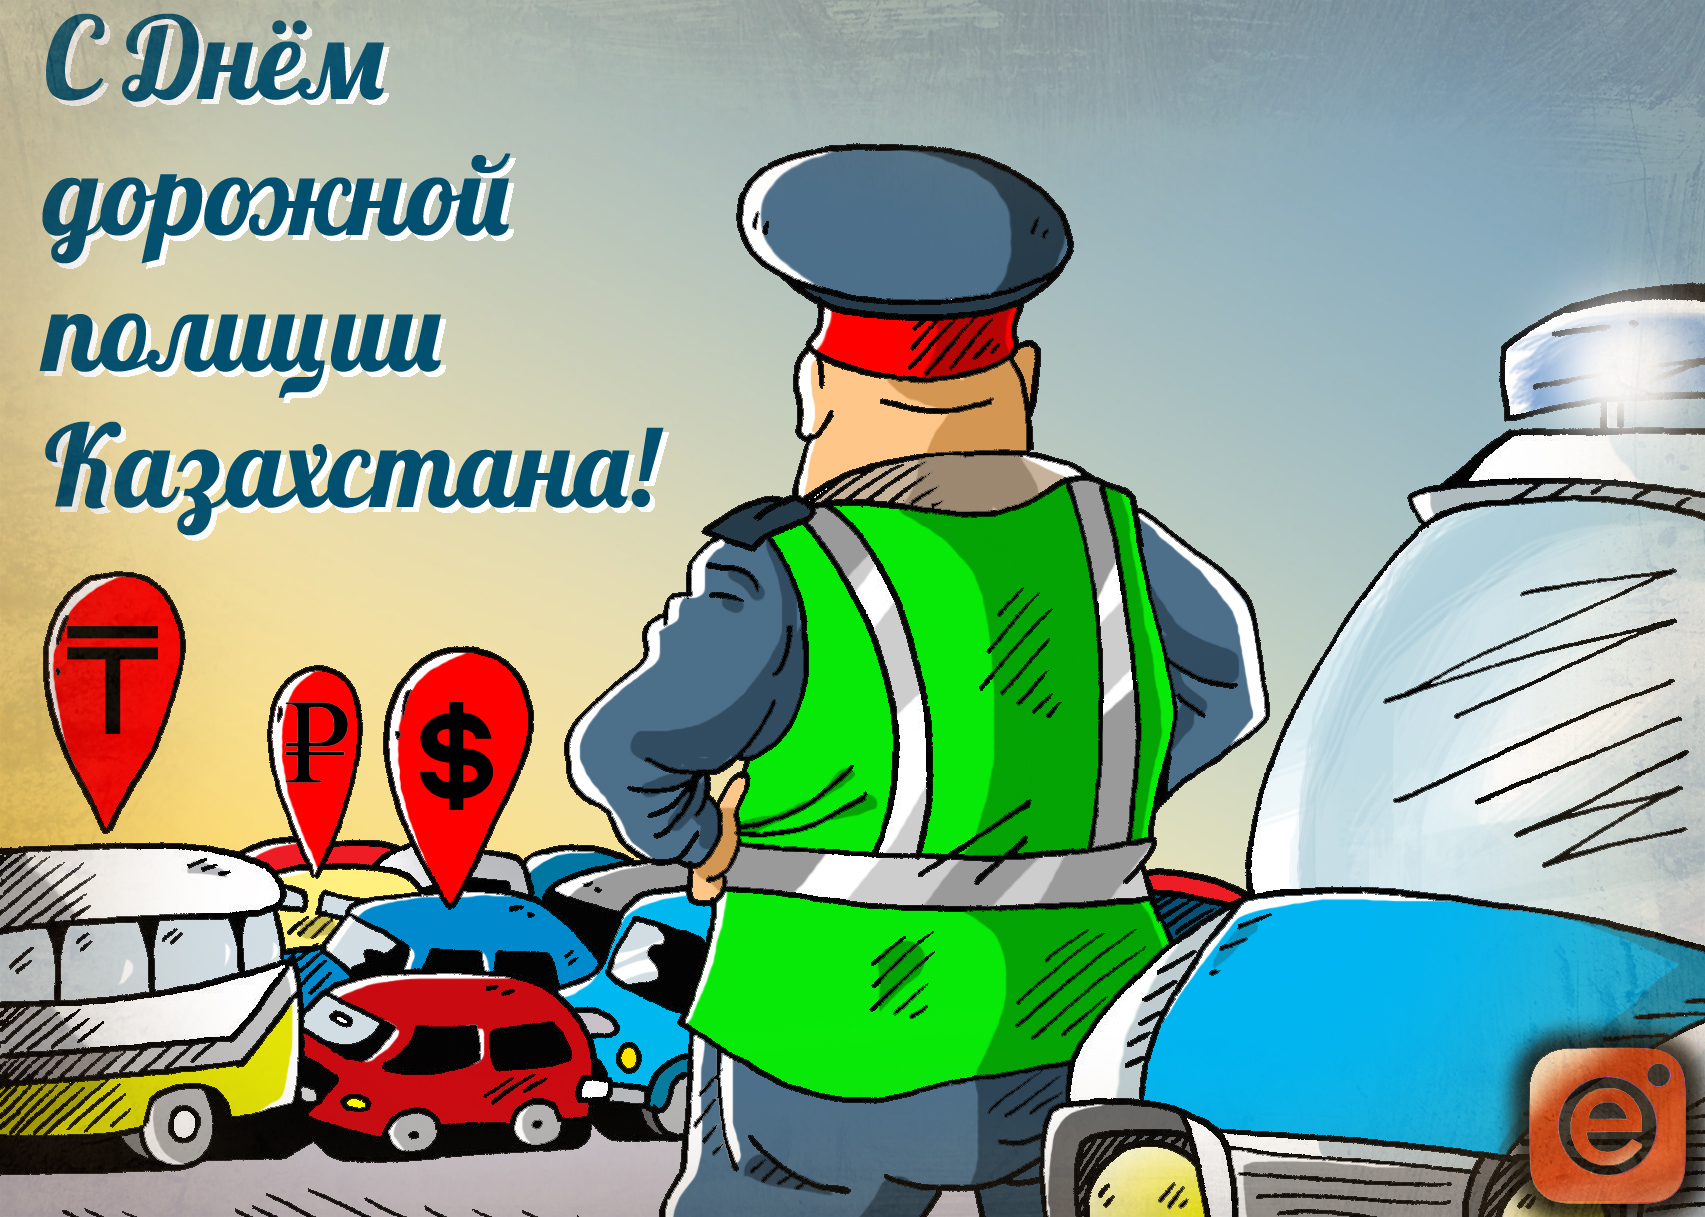 Поздравления С Днем Полиции Казахстана